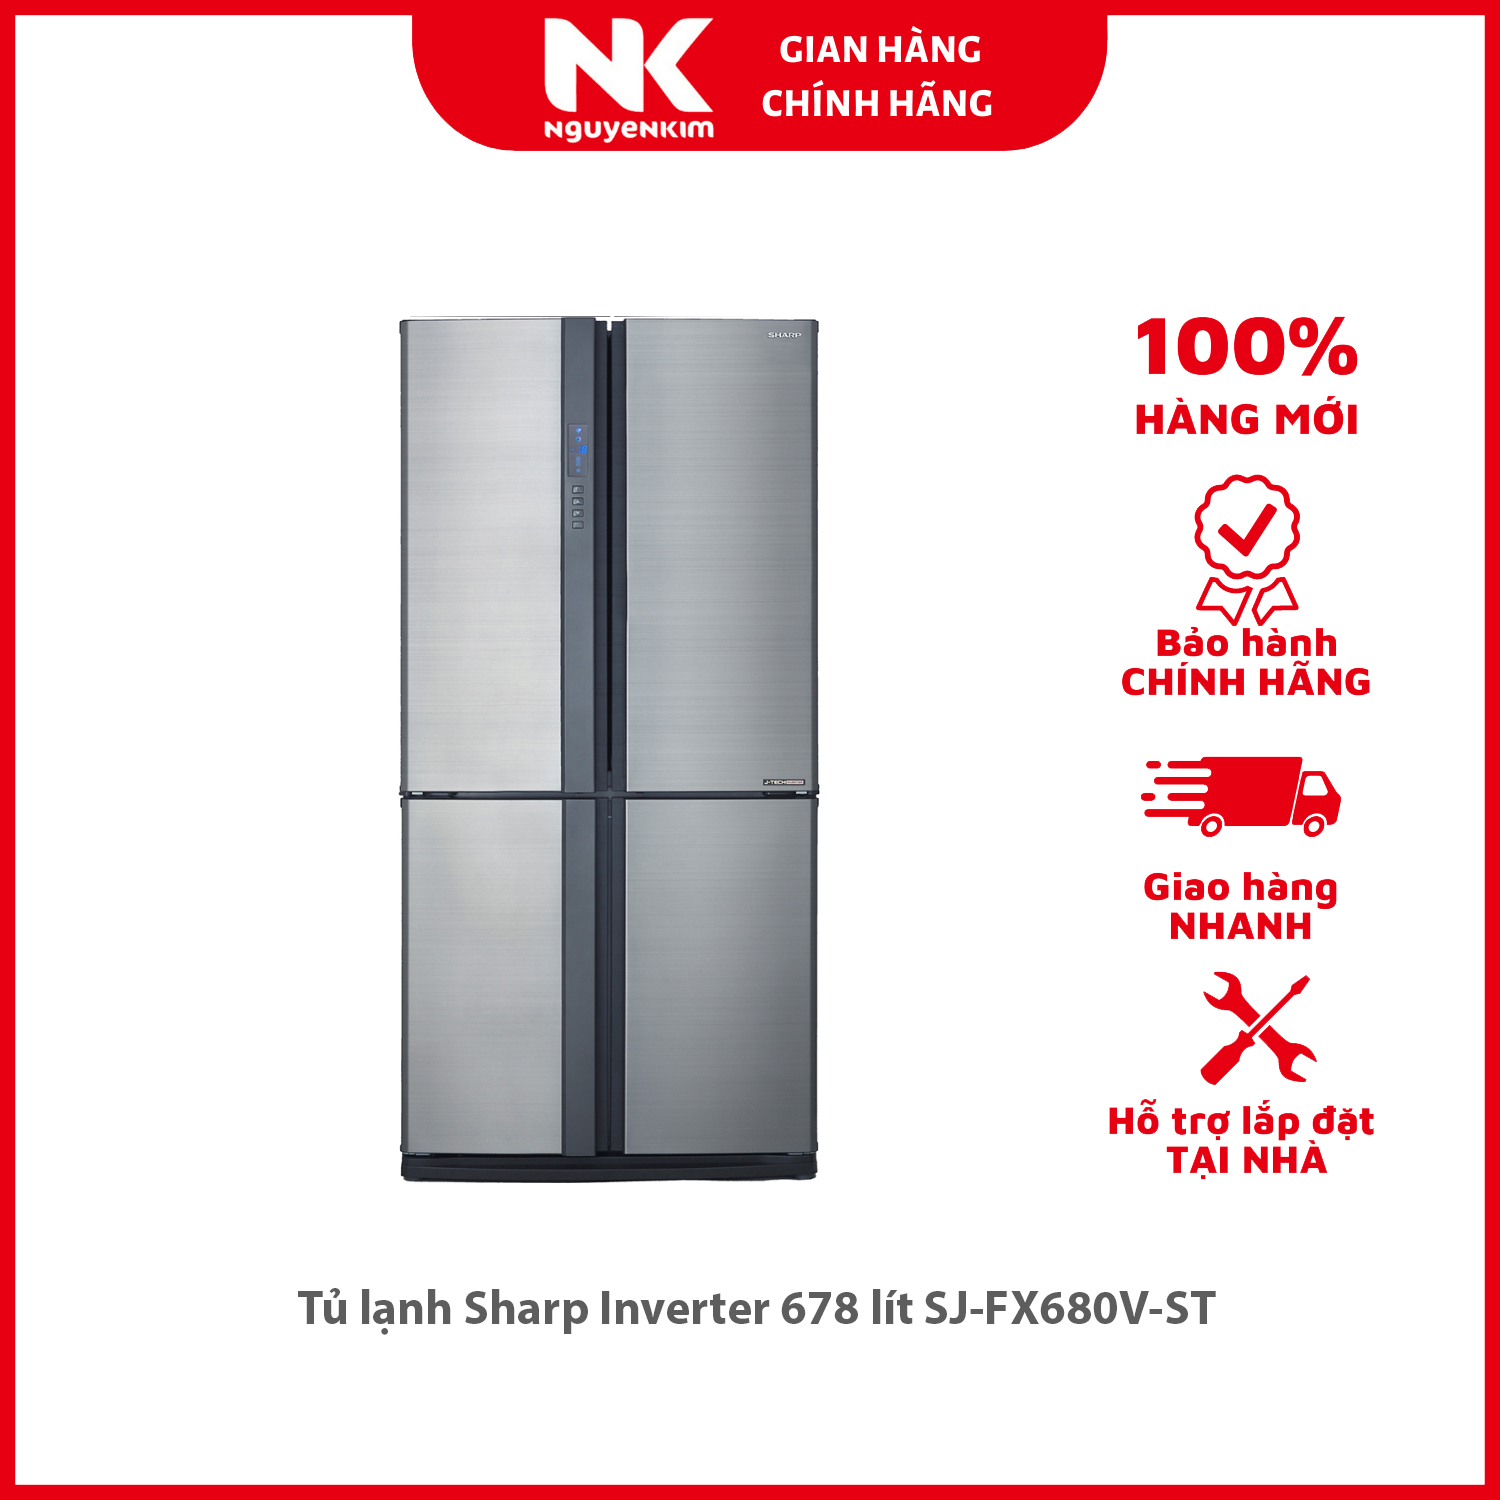 Tủ lạnh Sharp Inverter 678 lít SJ-FX680V-ST - Hàng chính hãng [Giao hàng toàn quốc]